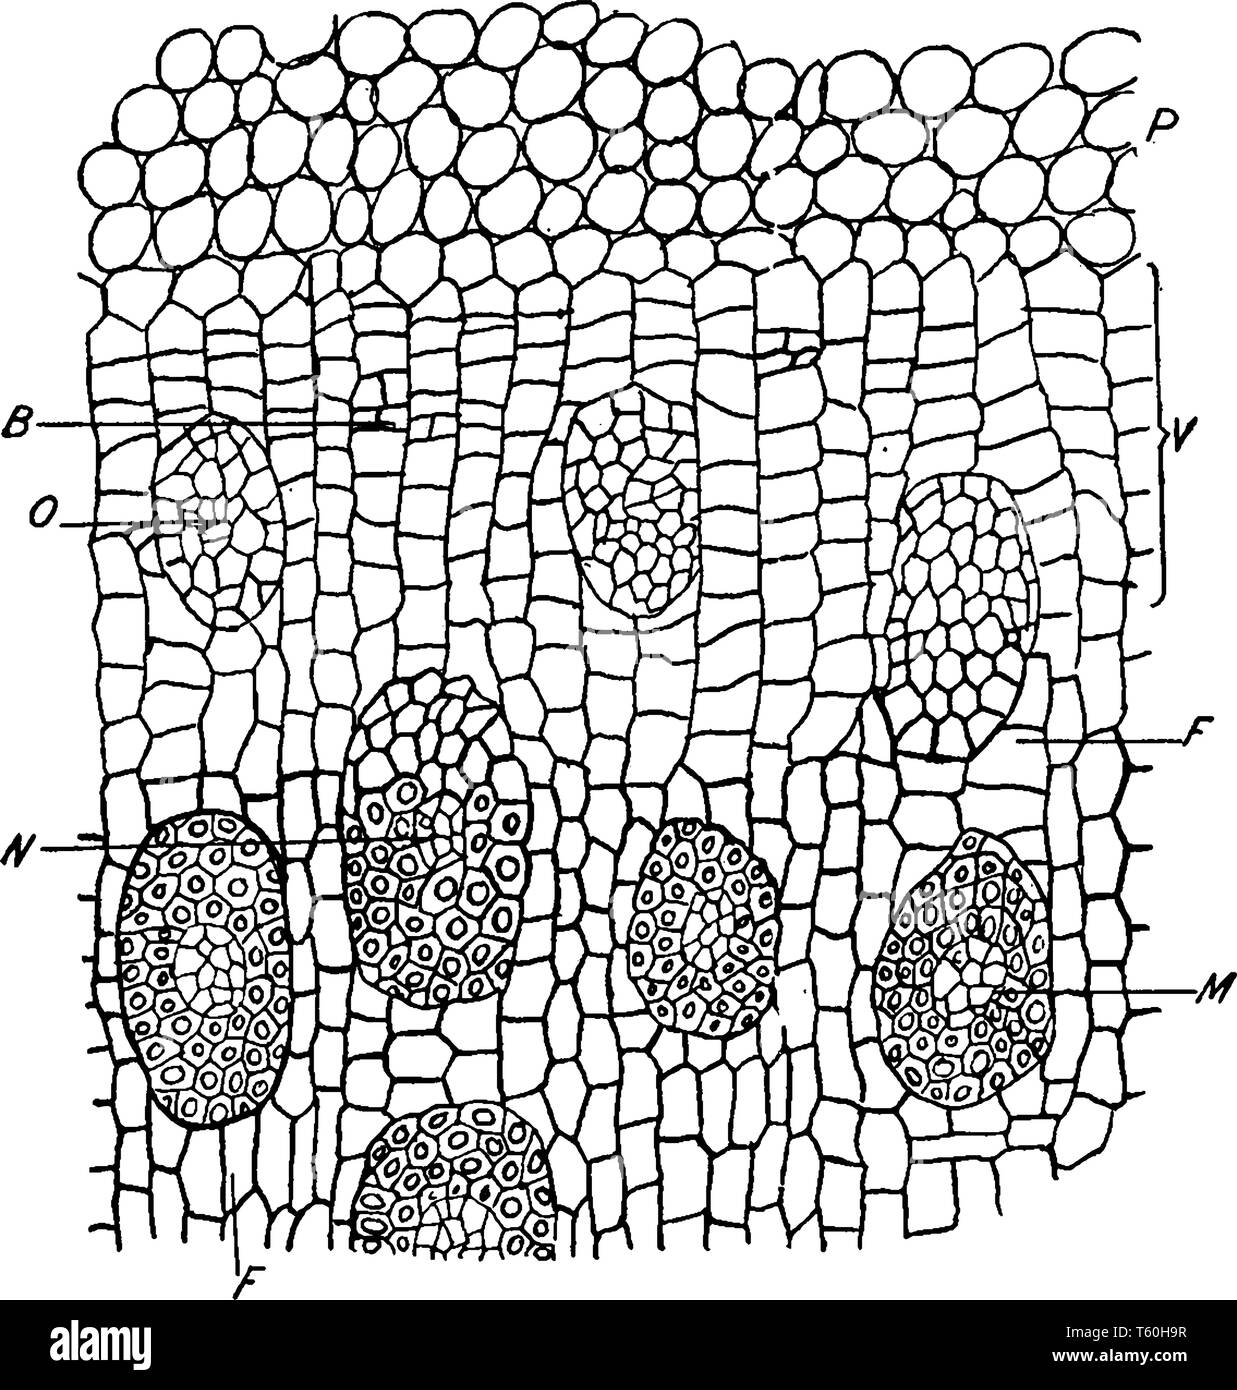 Ein Bild von V, meristematic Zone des pericycle durch die Aktivität der Stammzellen erhöht im Durchmesser, mit der Hinzufügung der neuen Leitbündel, Stock Vektor